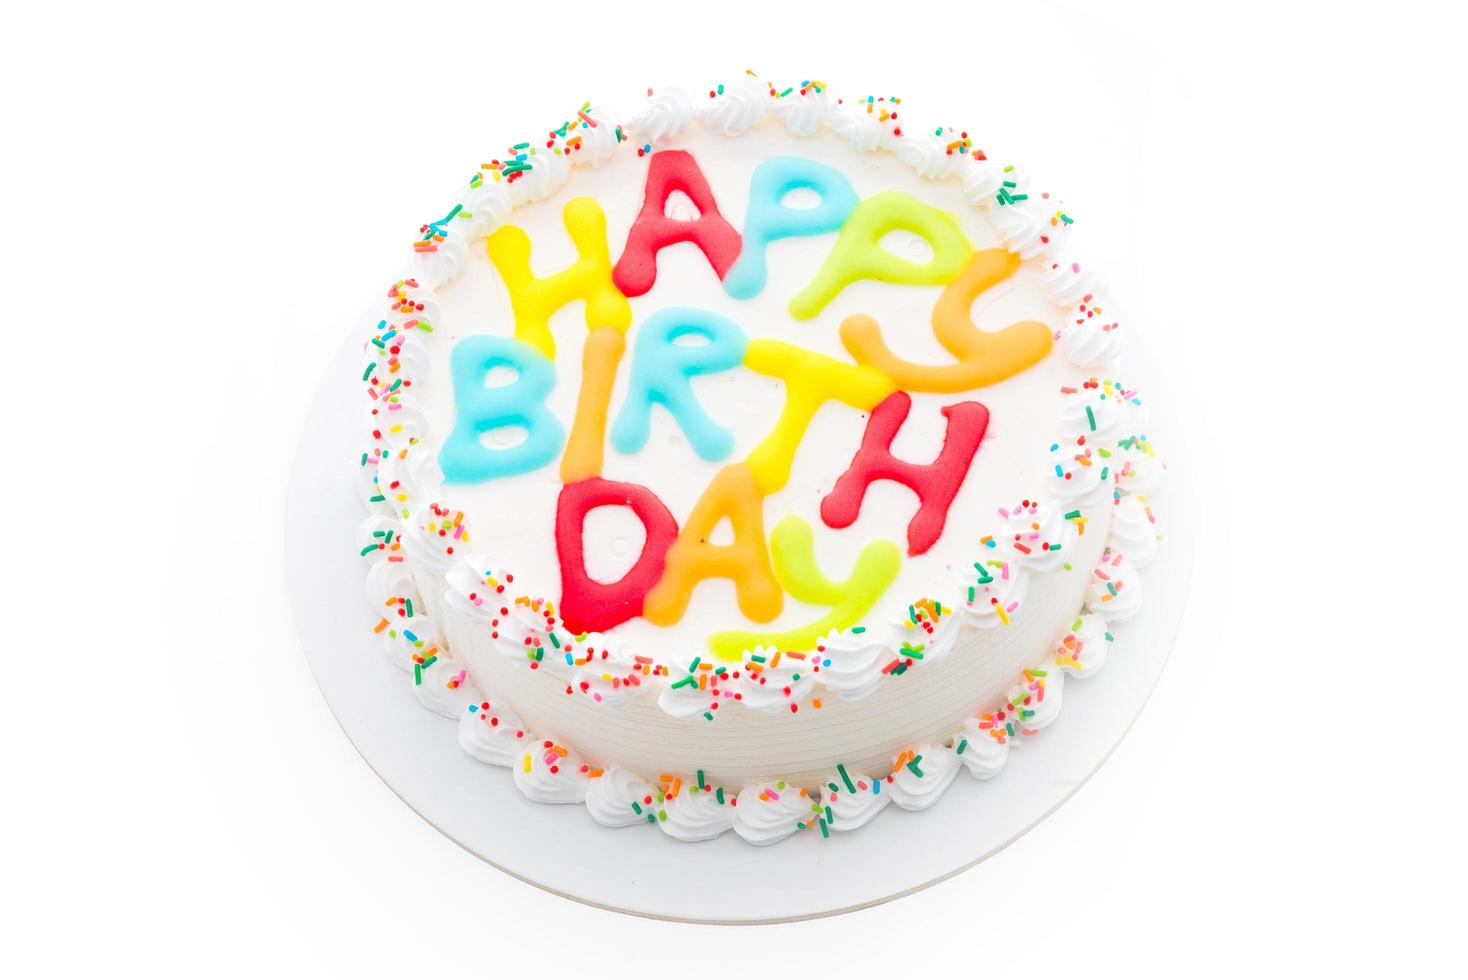 Happy birthday cake isolated on white background photo